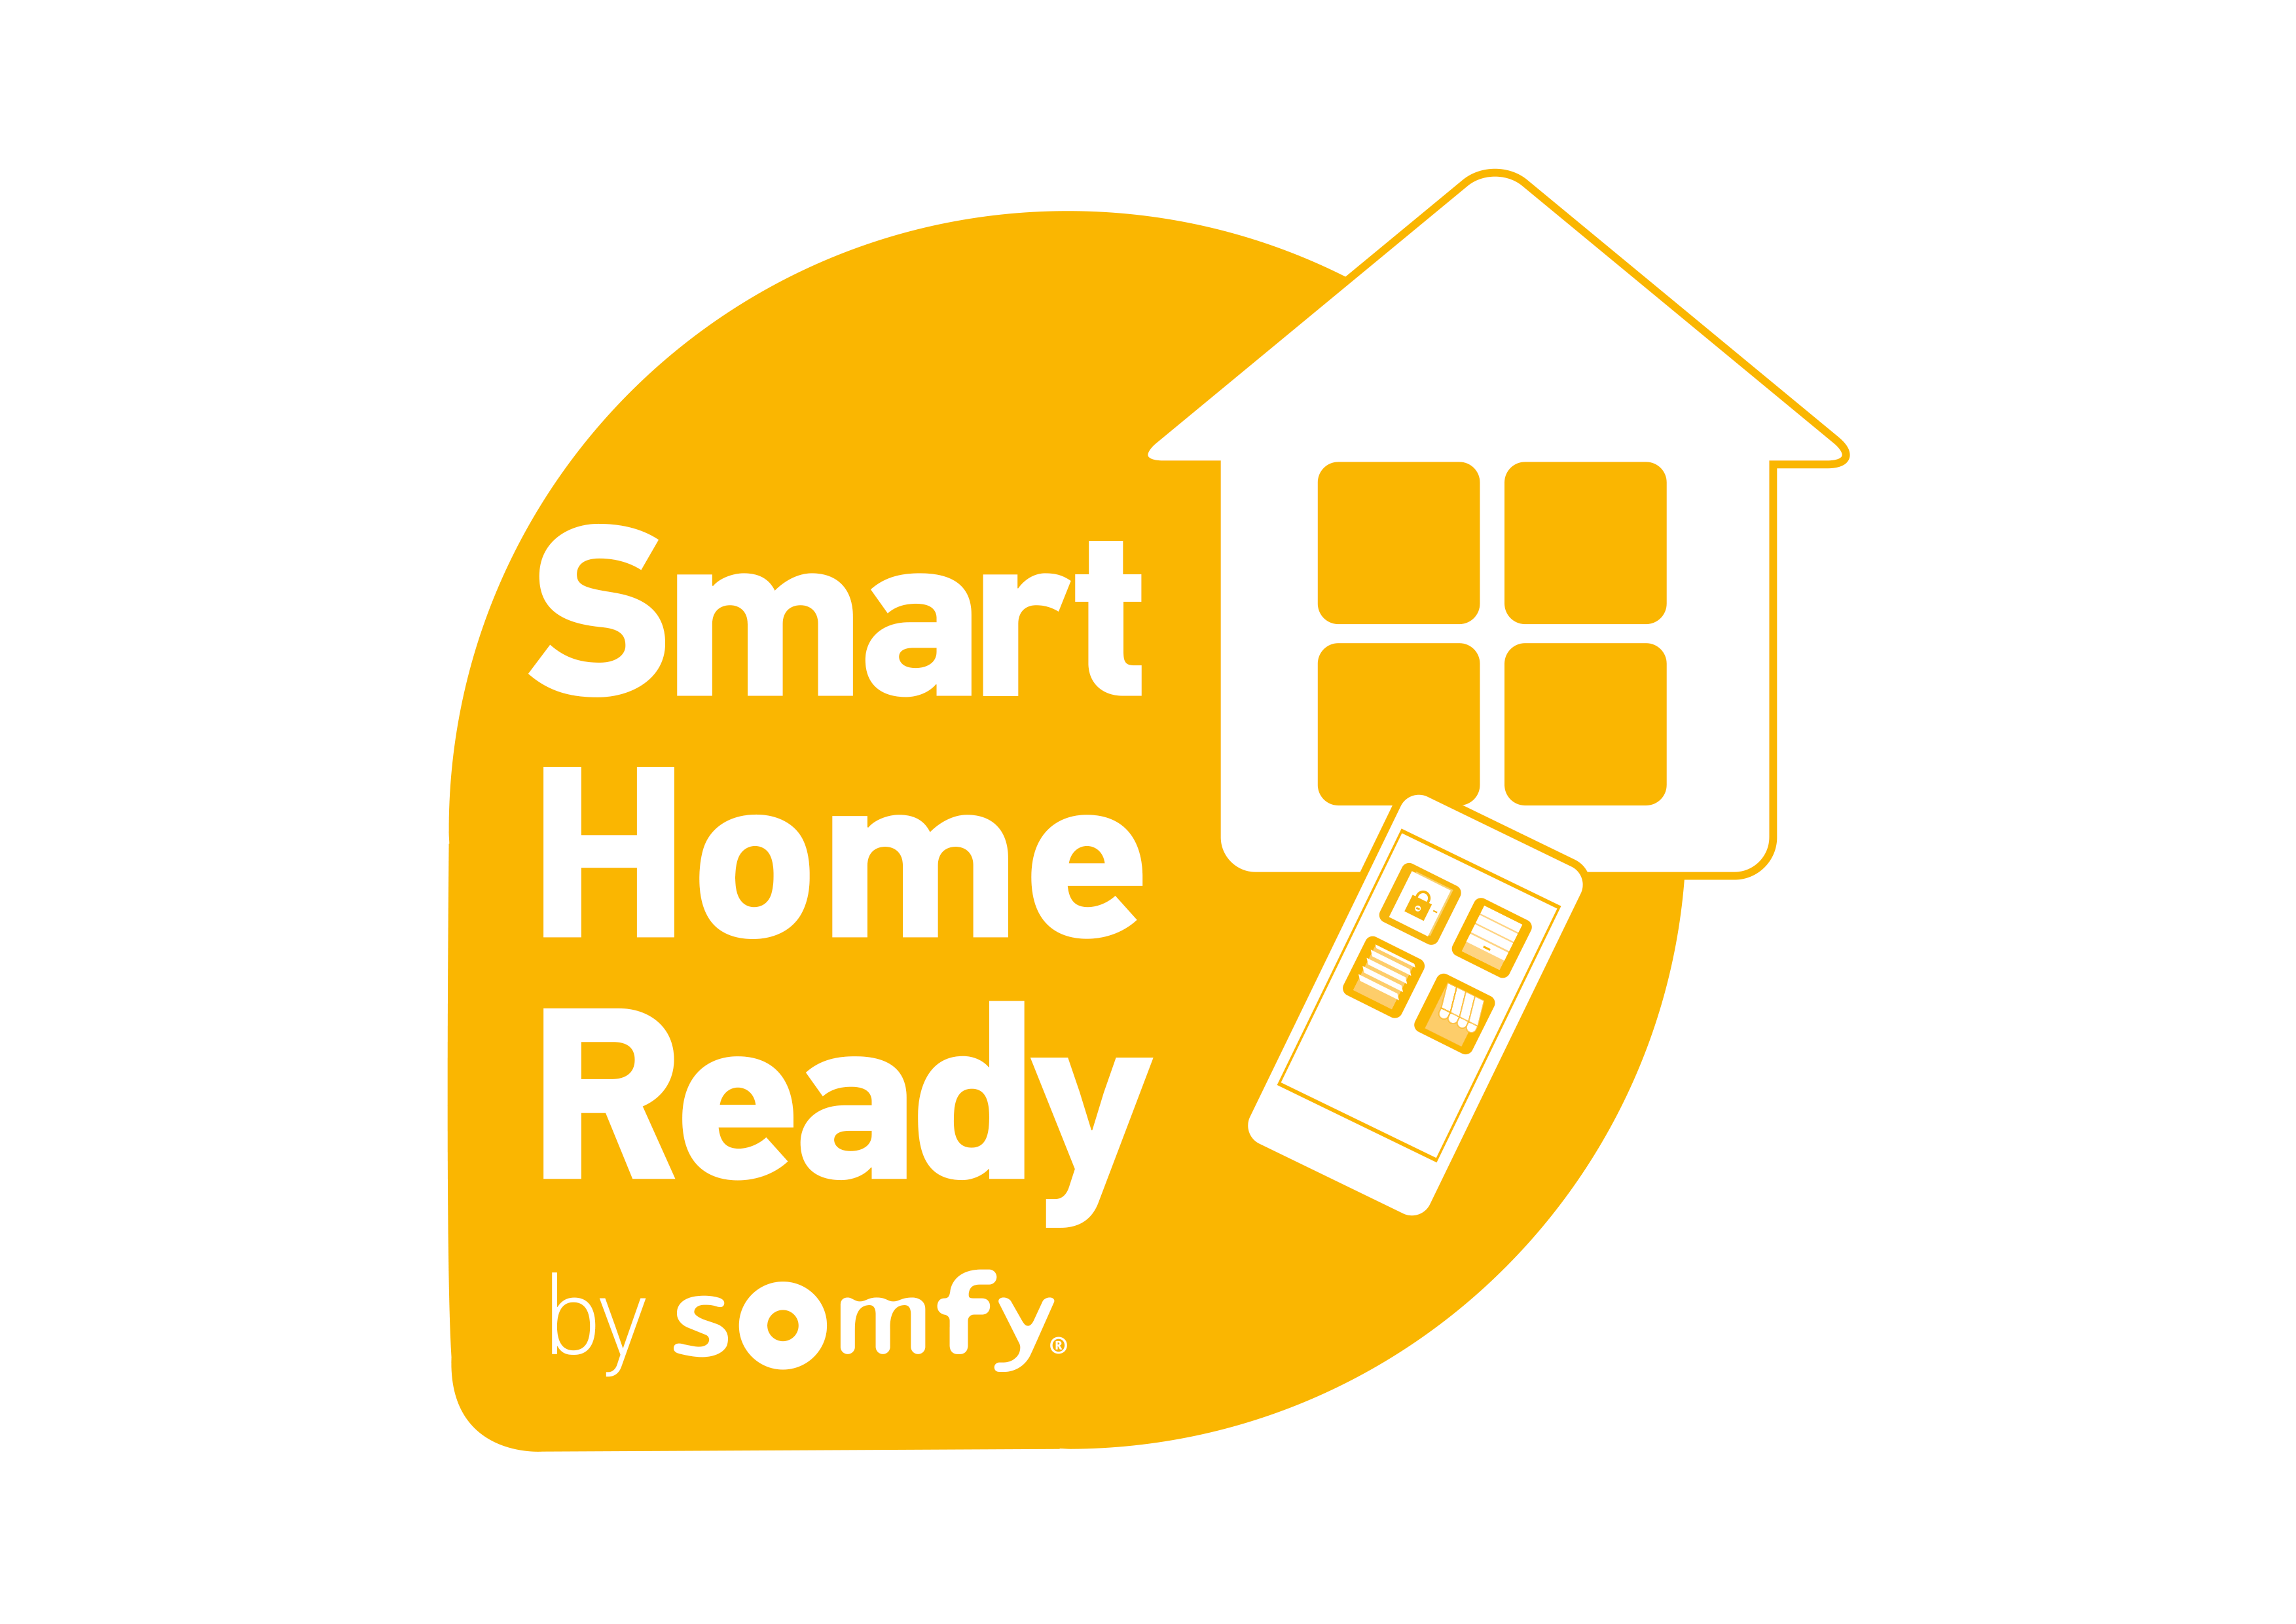 Smart Home Ready 2019 07 Original 23450